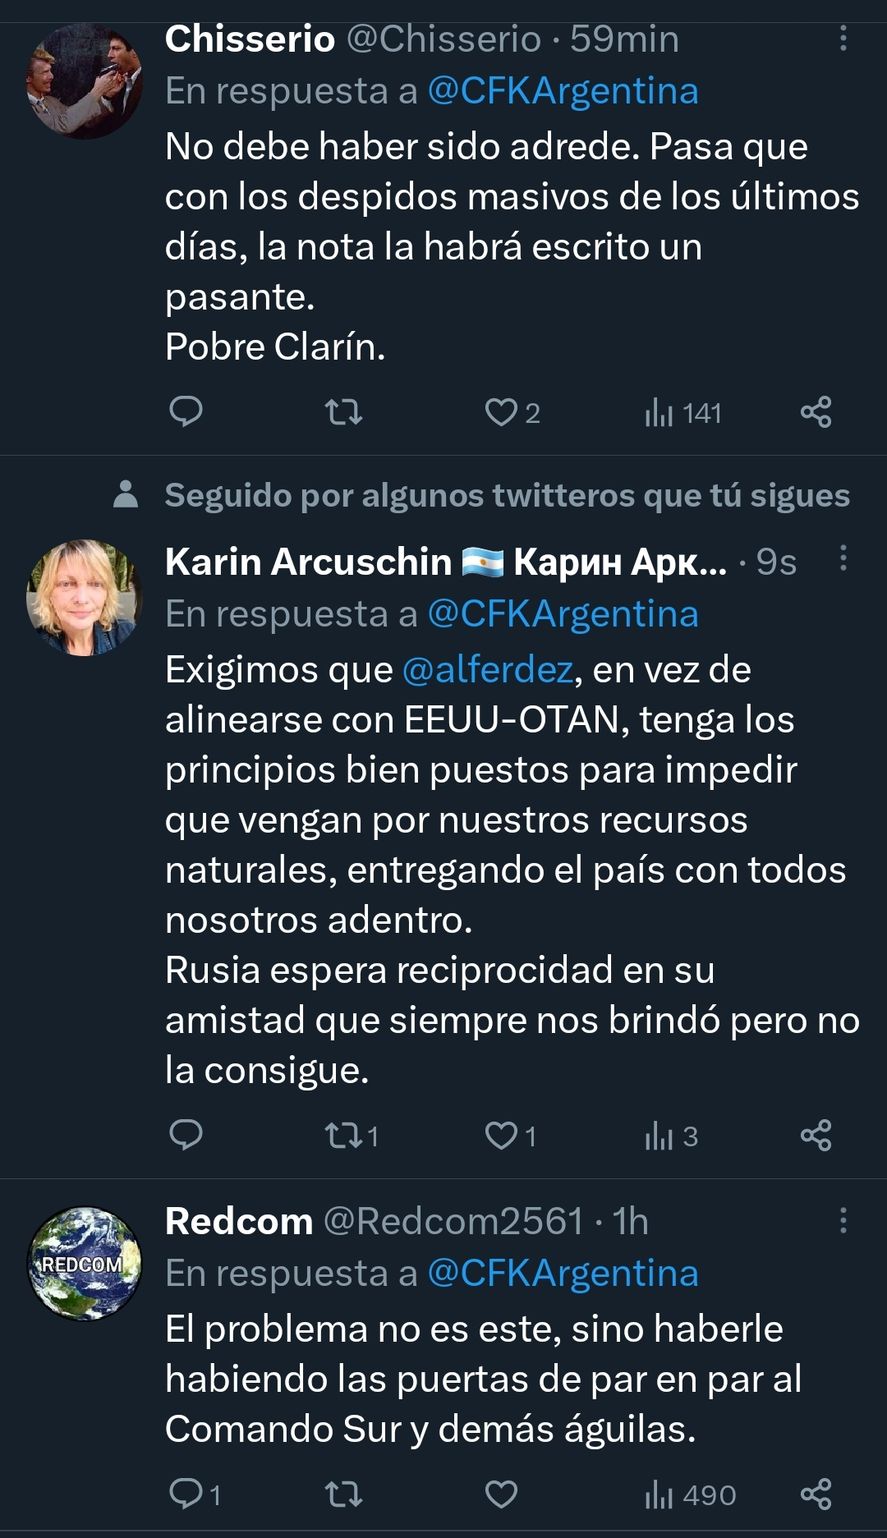 La réplica de Cristina Kirchner al artículo del diario Clarín generó muchas opiniones en redes sociales, algunas ligadas a la relación entre Argentina y EEUU 